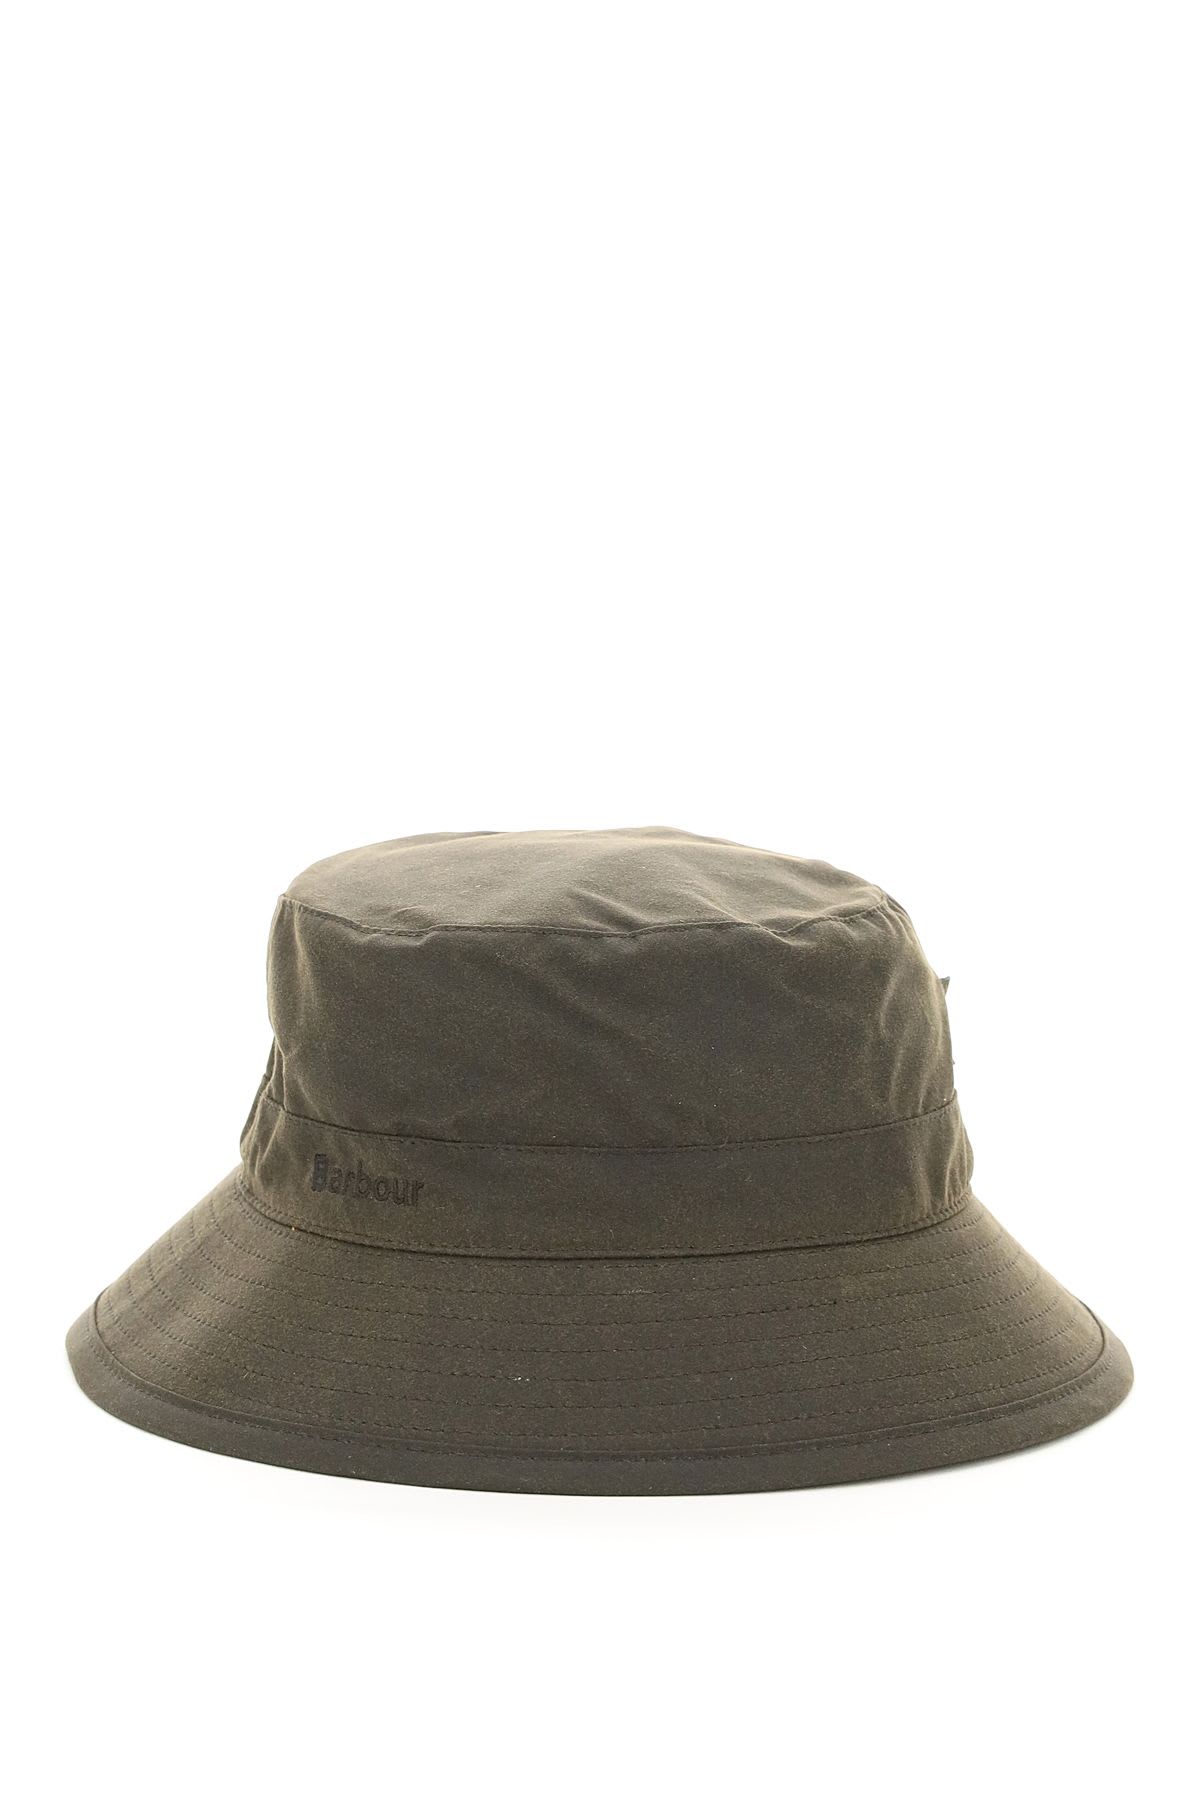 Barbour Wax Sports Bucket Hat In Brown